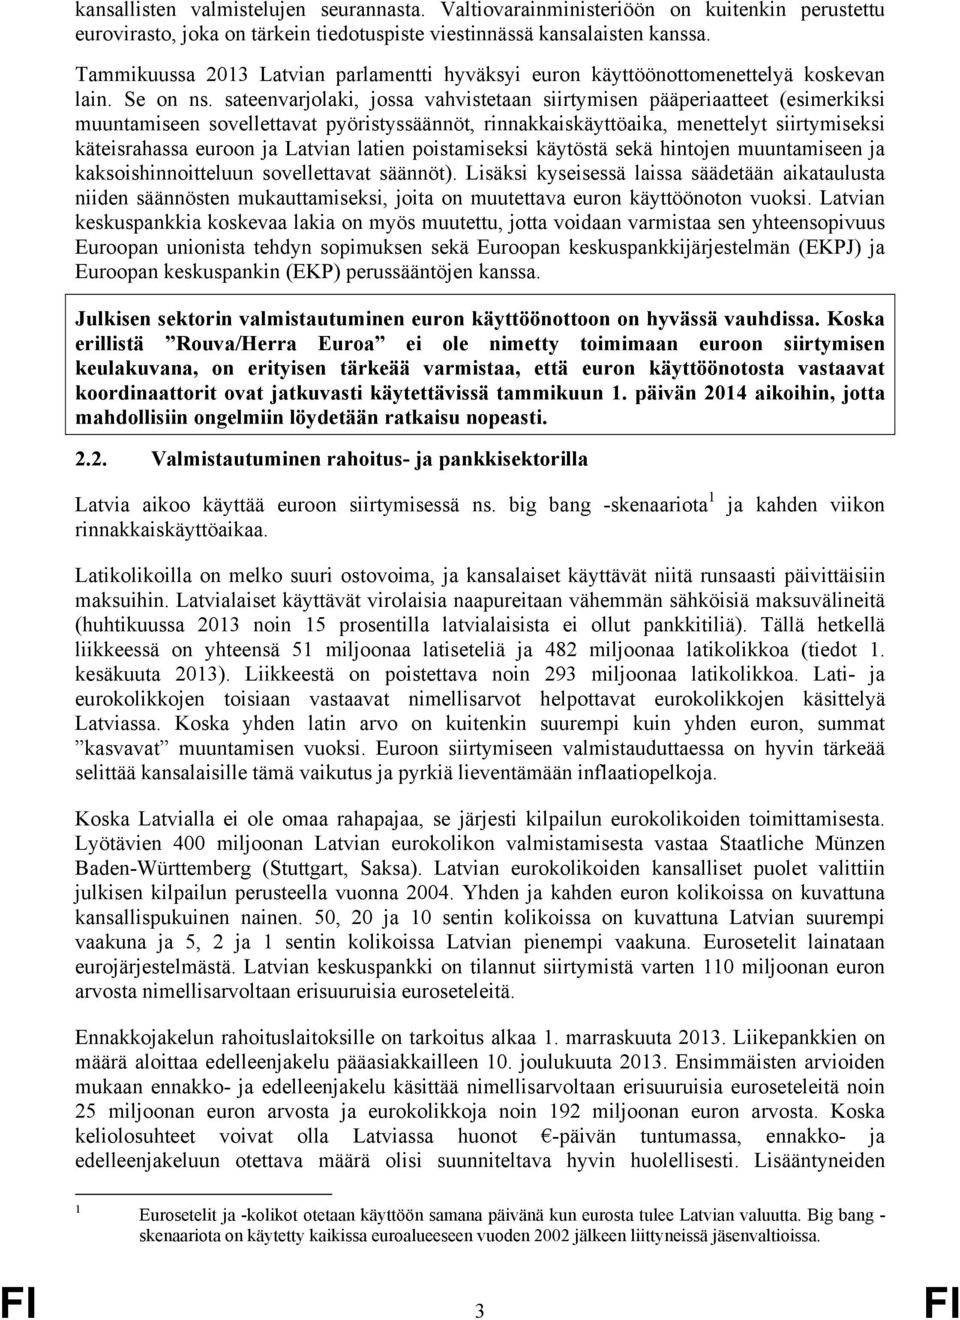 sateenvarjolaki, jossa vahvistetaan siirtymisen pääperiaatteet (esimerkiksi muuntamiseen sovellettavat pyöristyssäännöt, rinnakkaiskäyttöaika, menettelyt siirtymiseksi käteisrahassa euroon ja Latvian